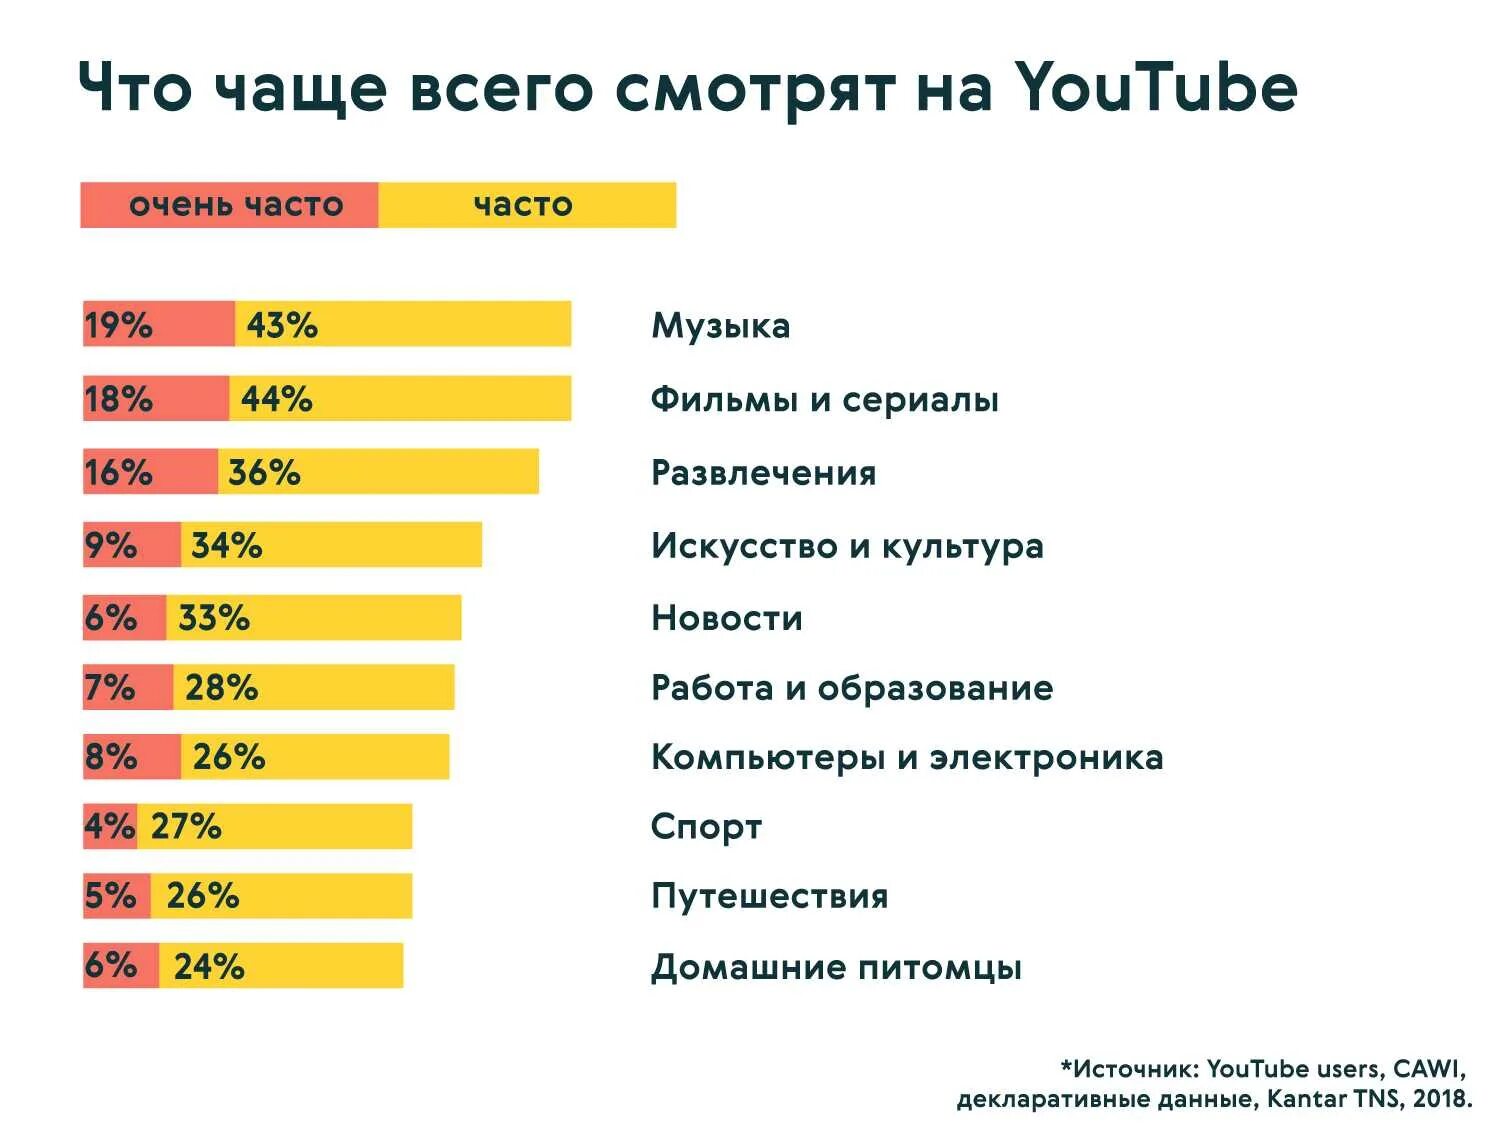 Чем сейчас увлекаются. Самый популярный контент. Самый популярный контент на ютубе. Востребованный контент в России. Самый популярный контент в интернете.